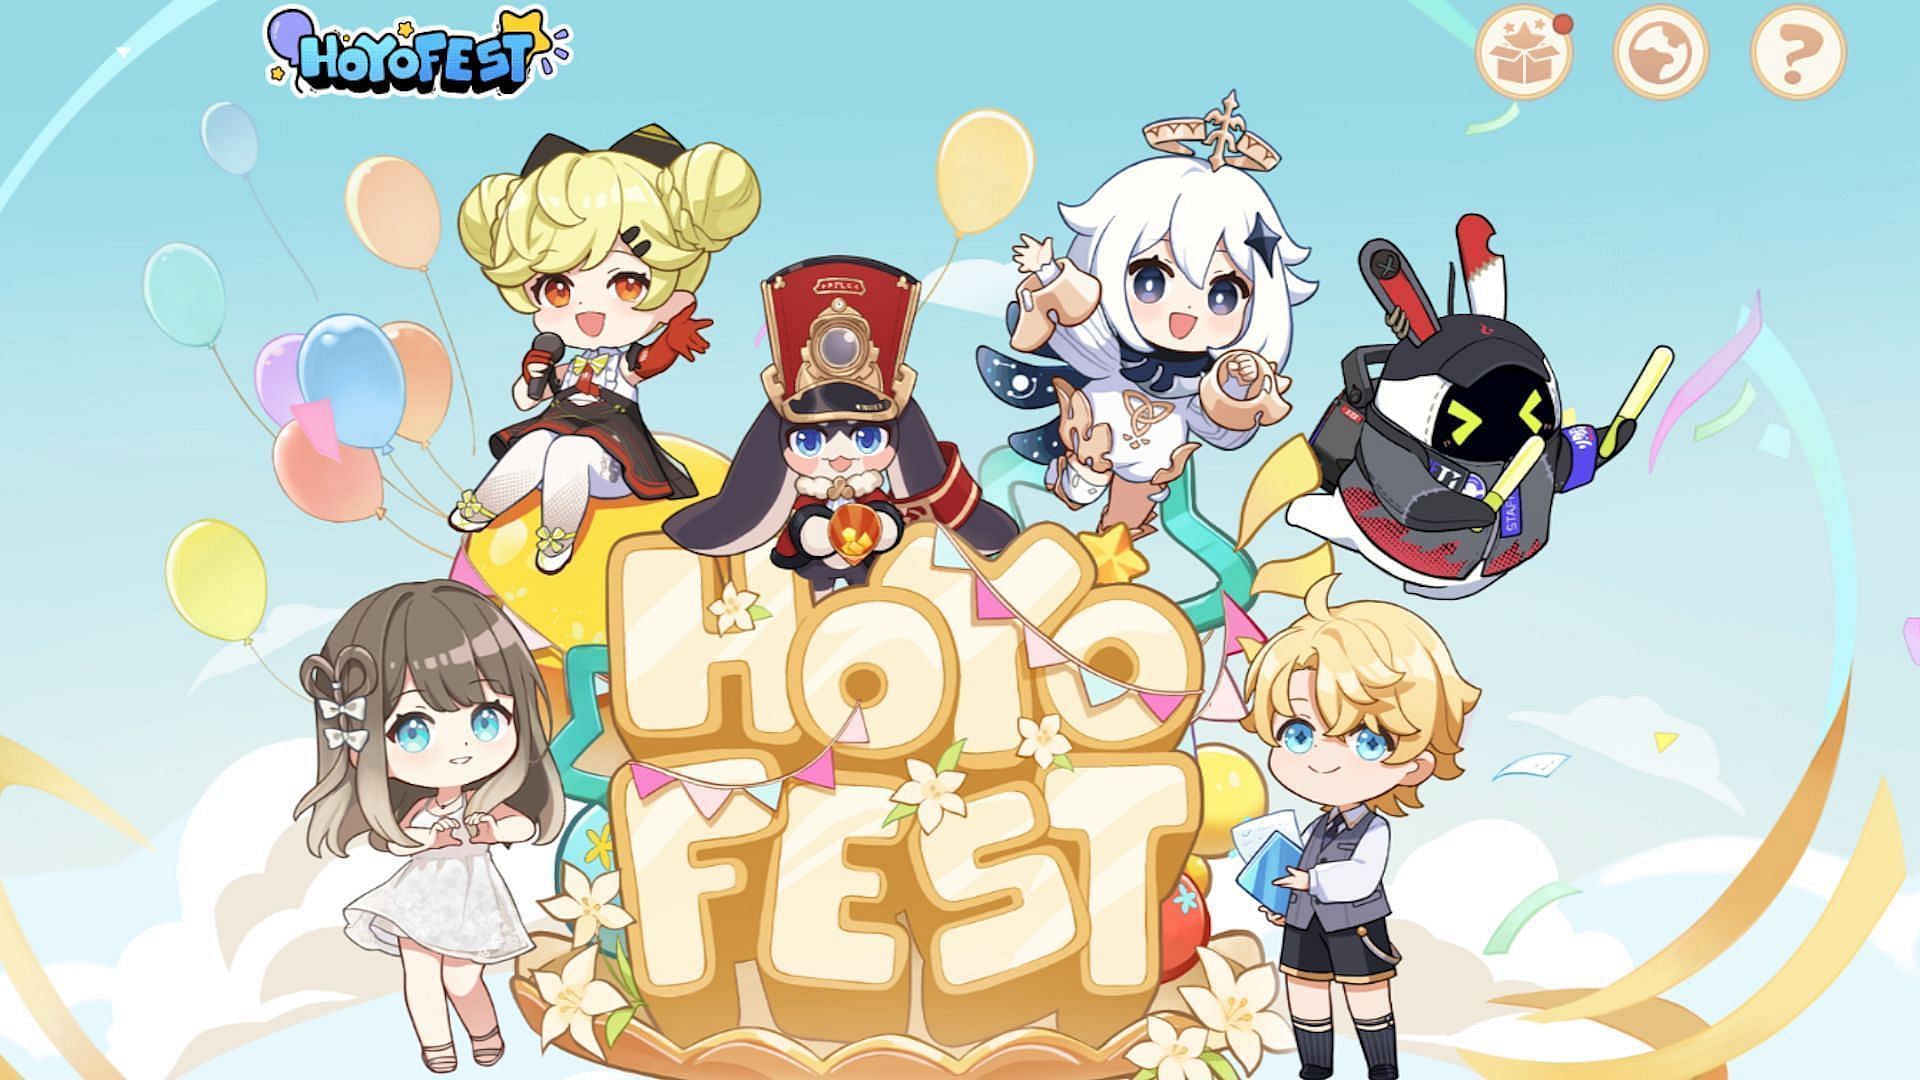 The official artwork for HoYo FEST 2023 (Image via HoYoverse)